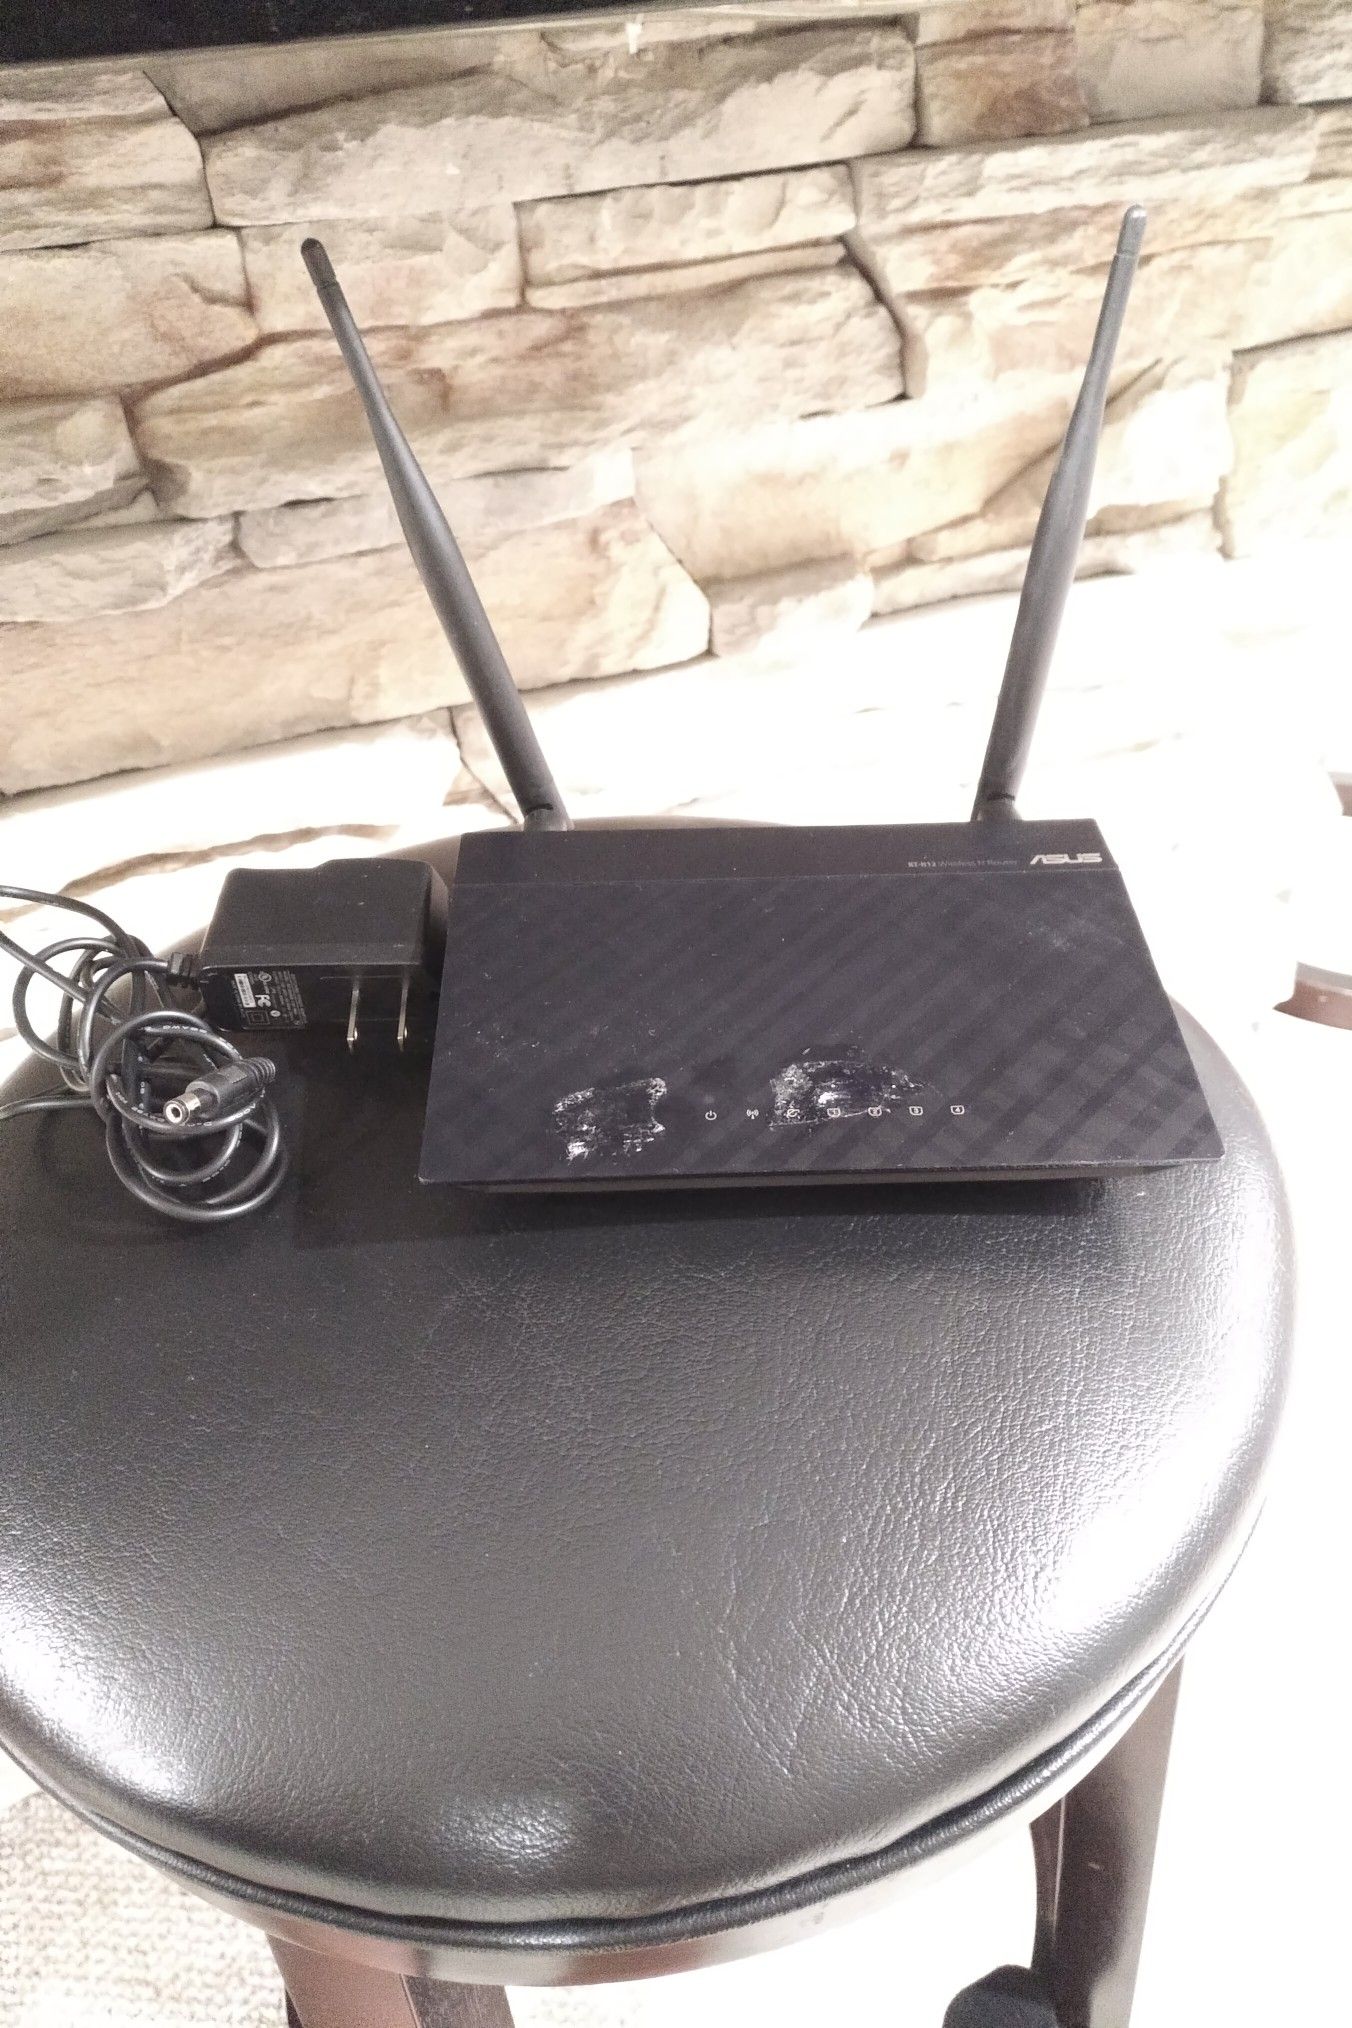 Asus RT-N12 Wireless N Router Black